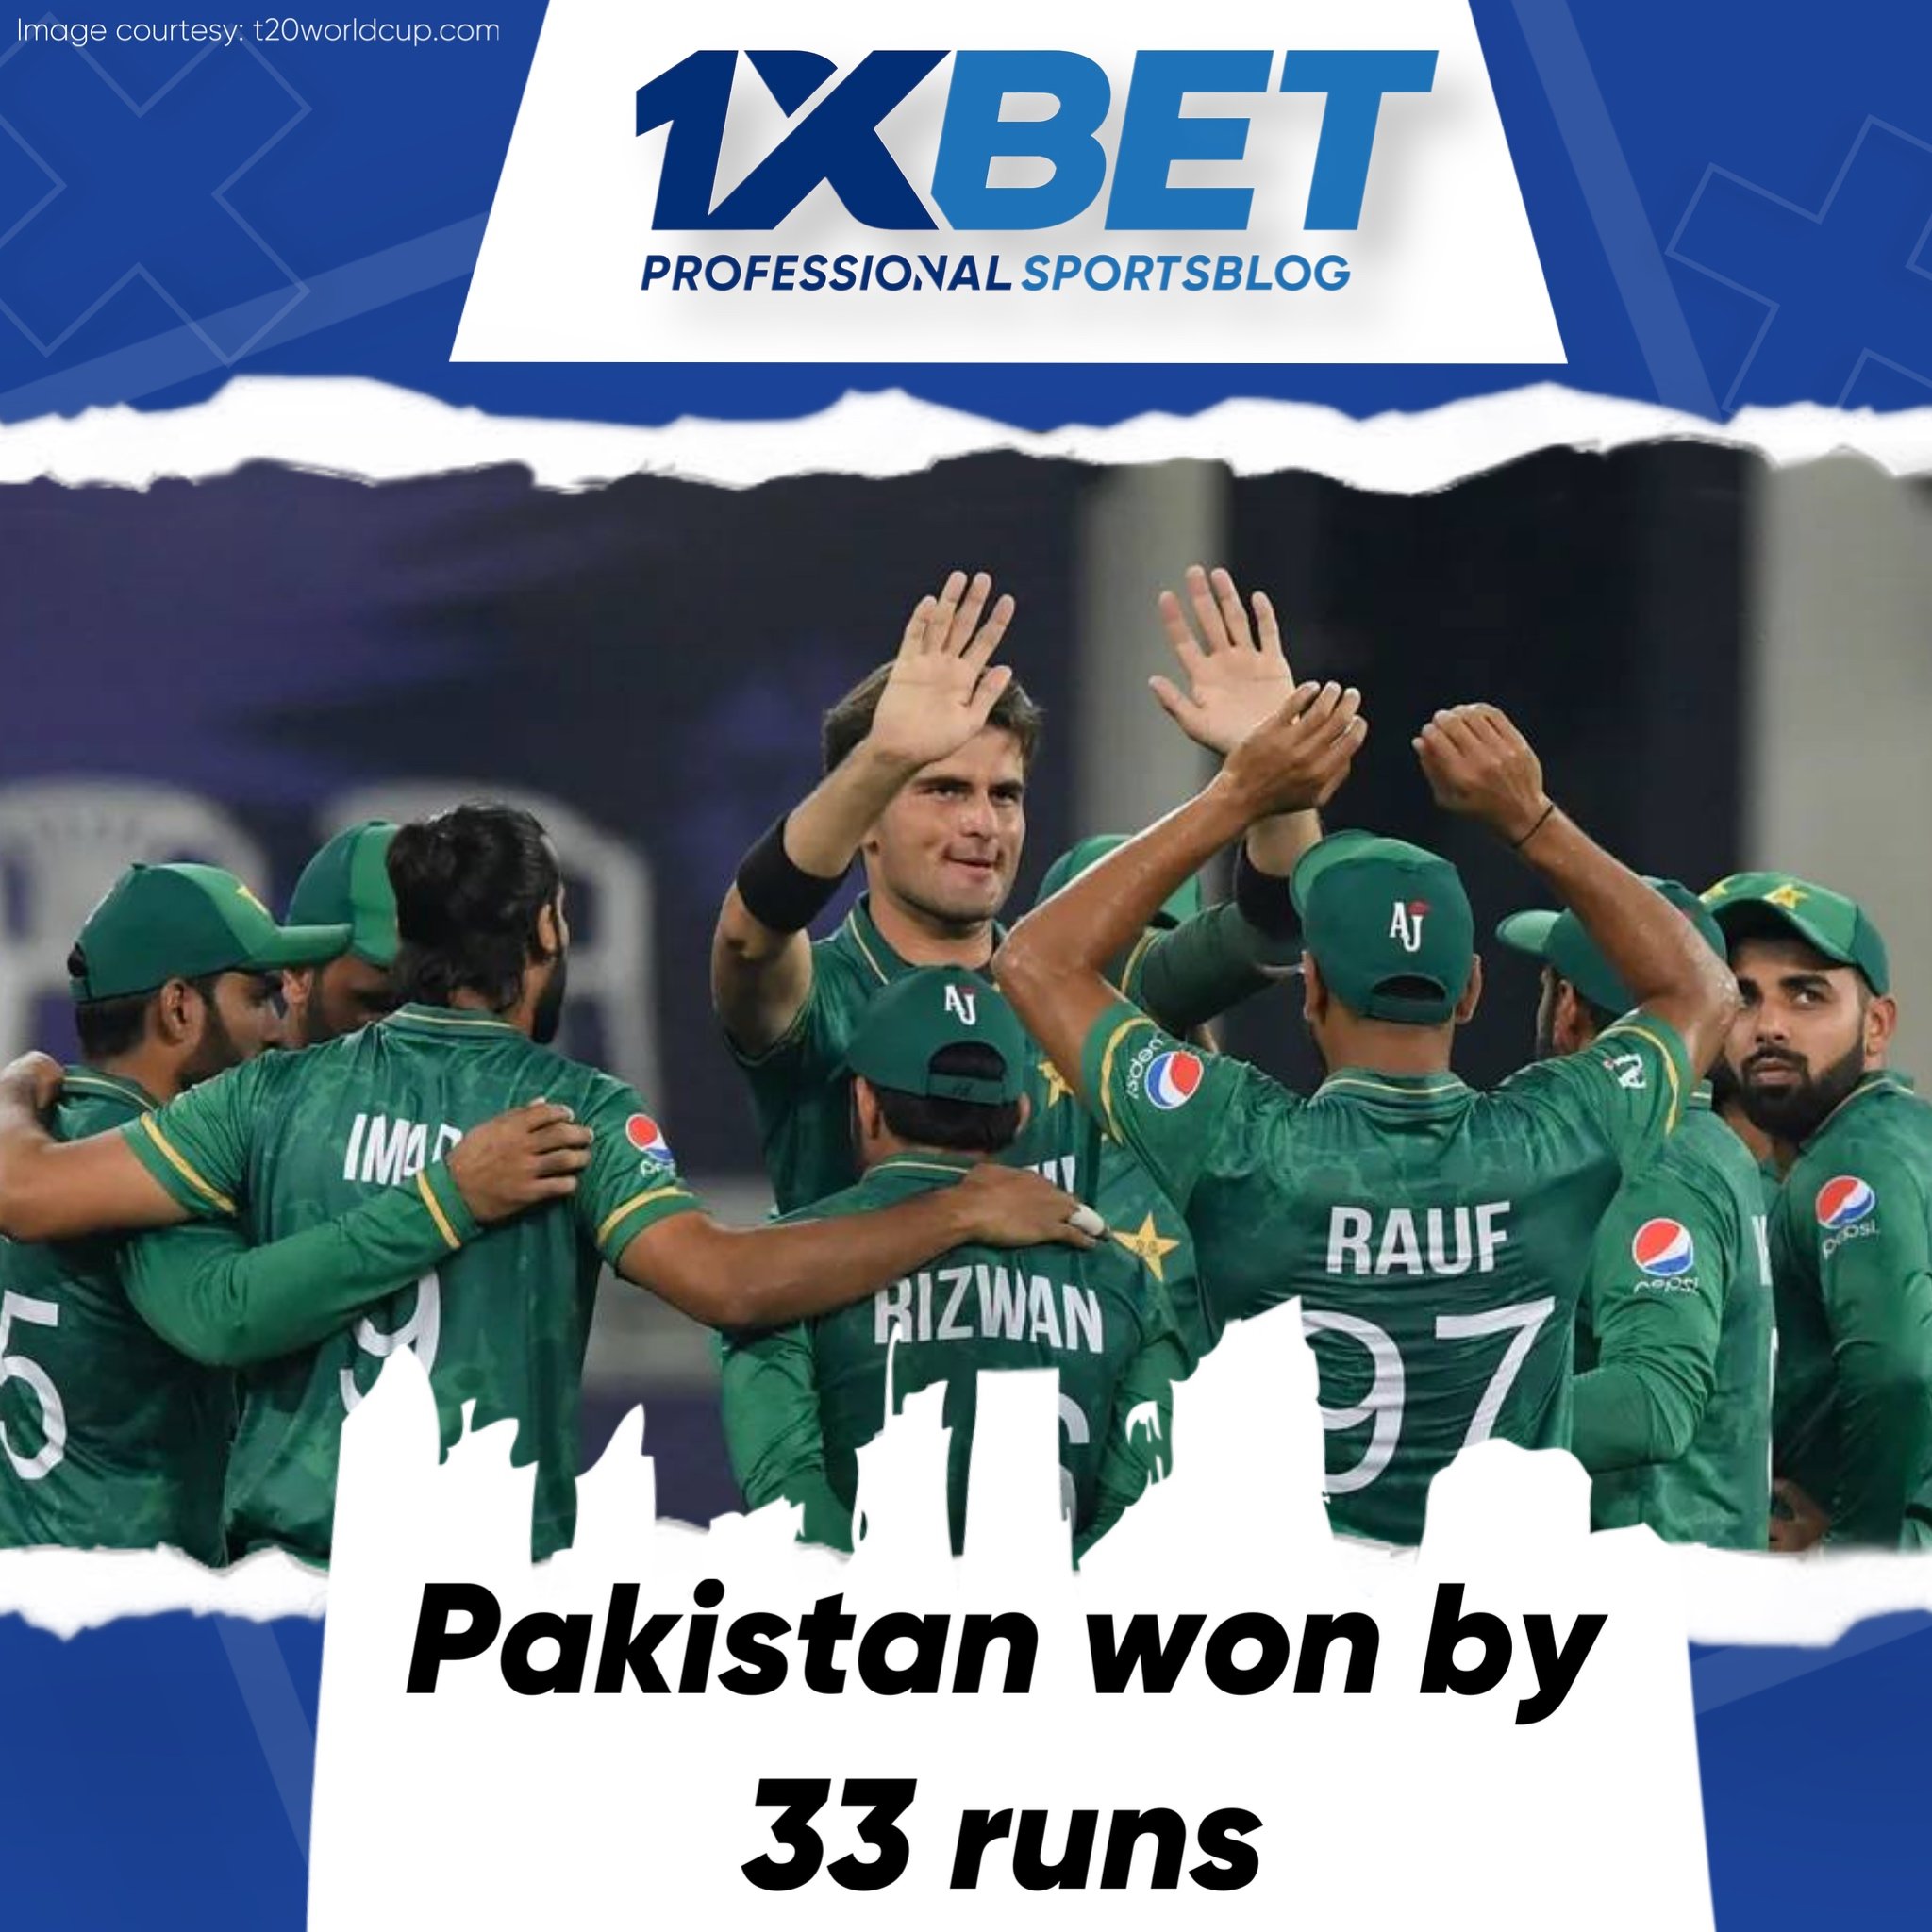 Pakistan won by 33 runs